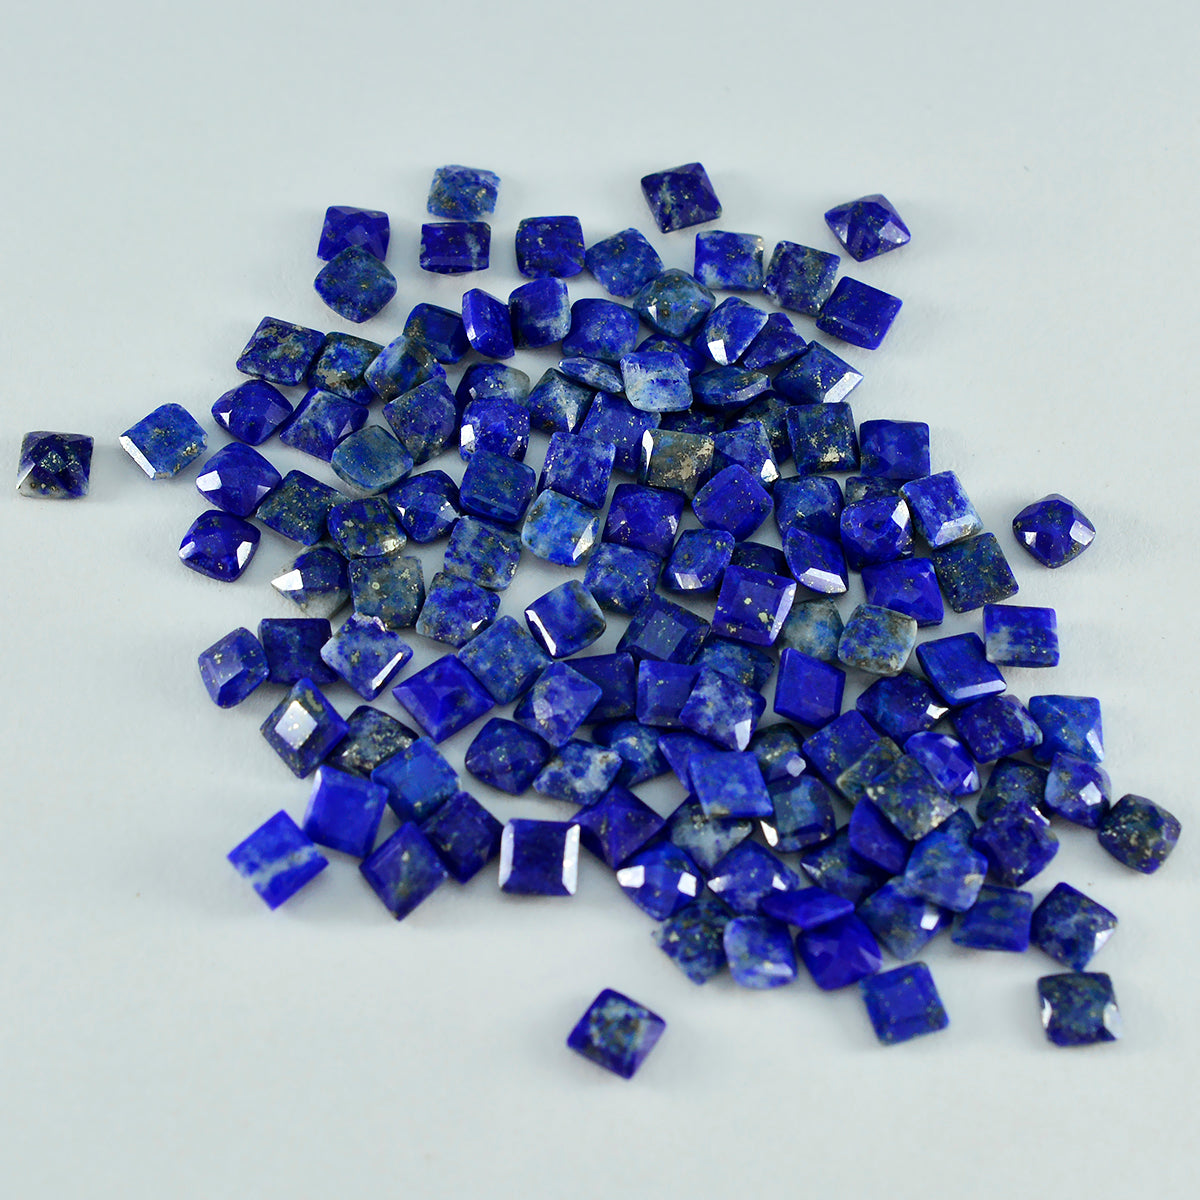 Riyogems 1 pièce de lapis-lazuli bleu véritable à facettes 3x3mm forme carrée jolie qualité pierres précieuses en vrac